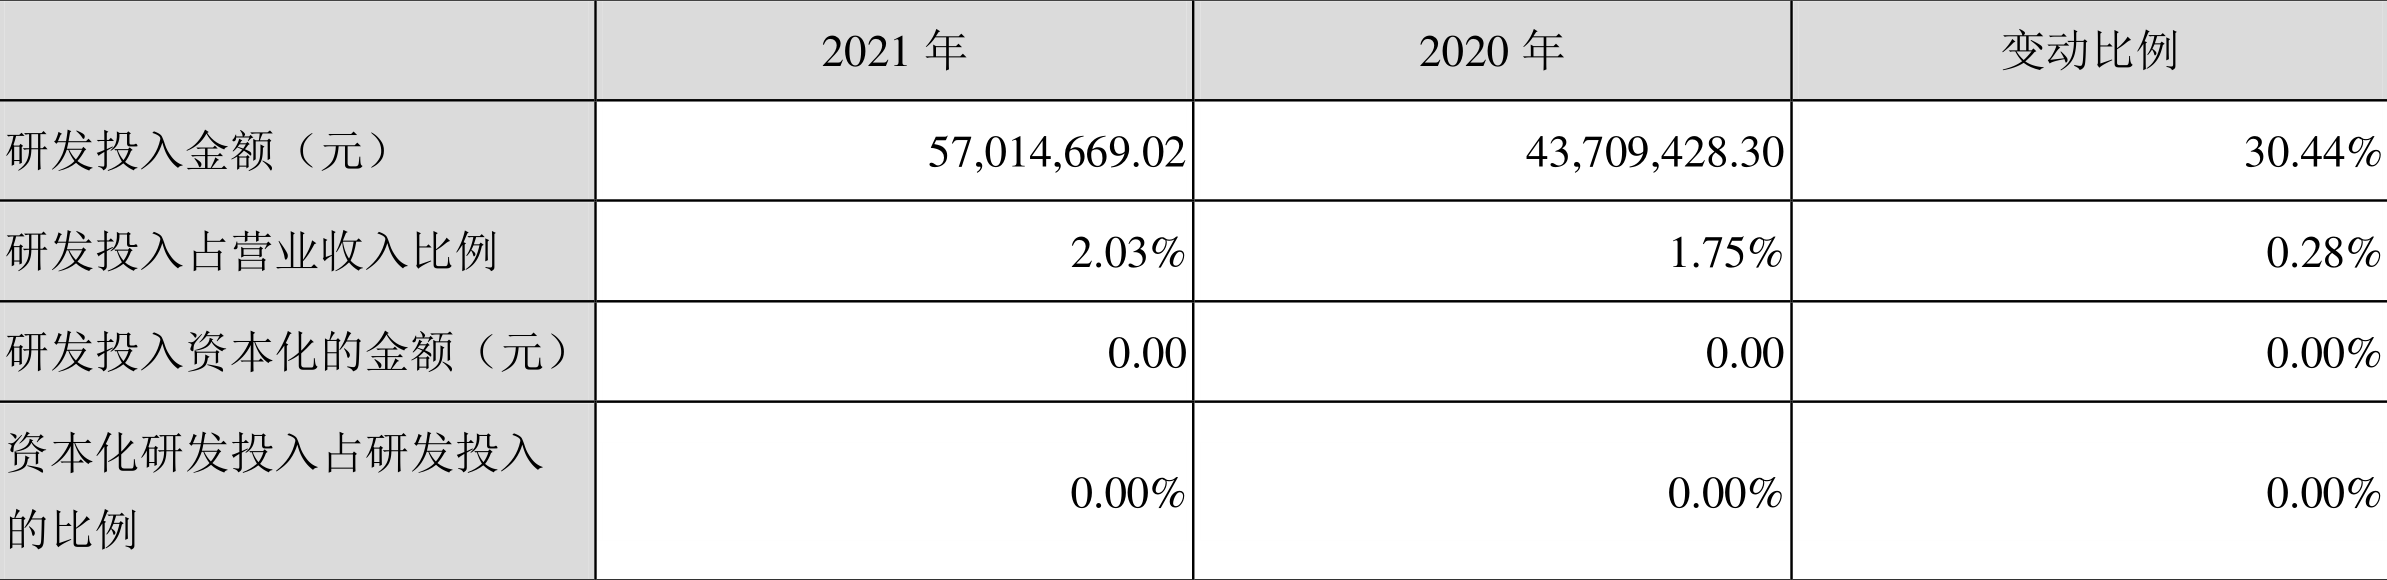 金陵药业：2021年净利润同比增长85.19% 拟10派1元